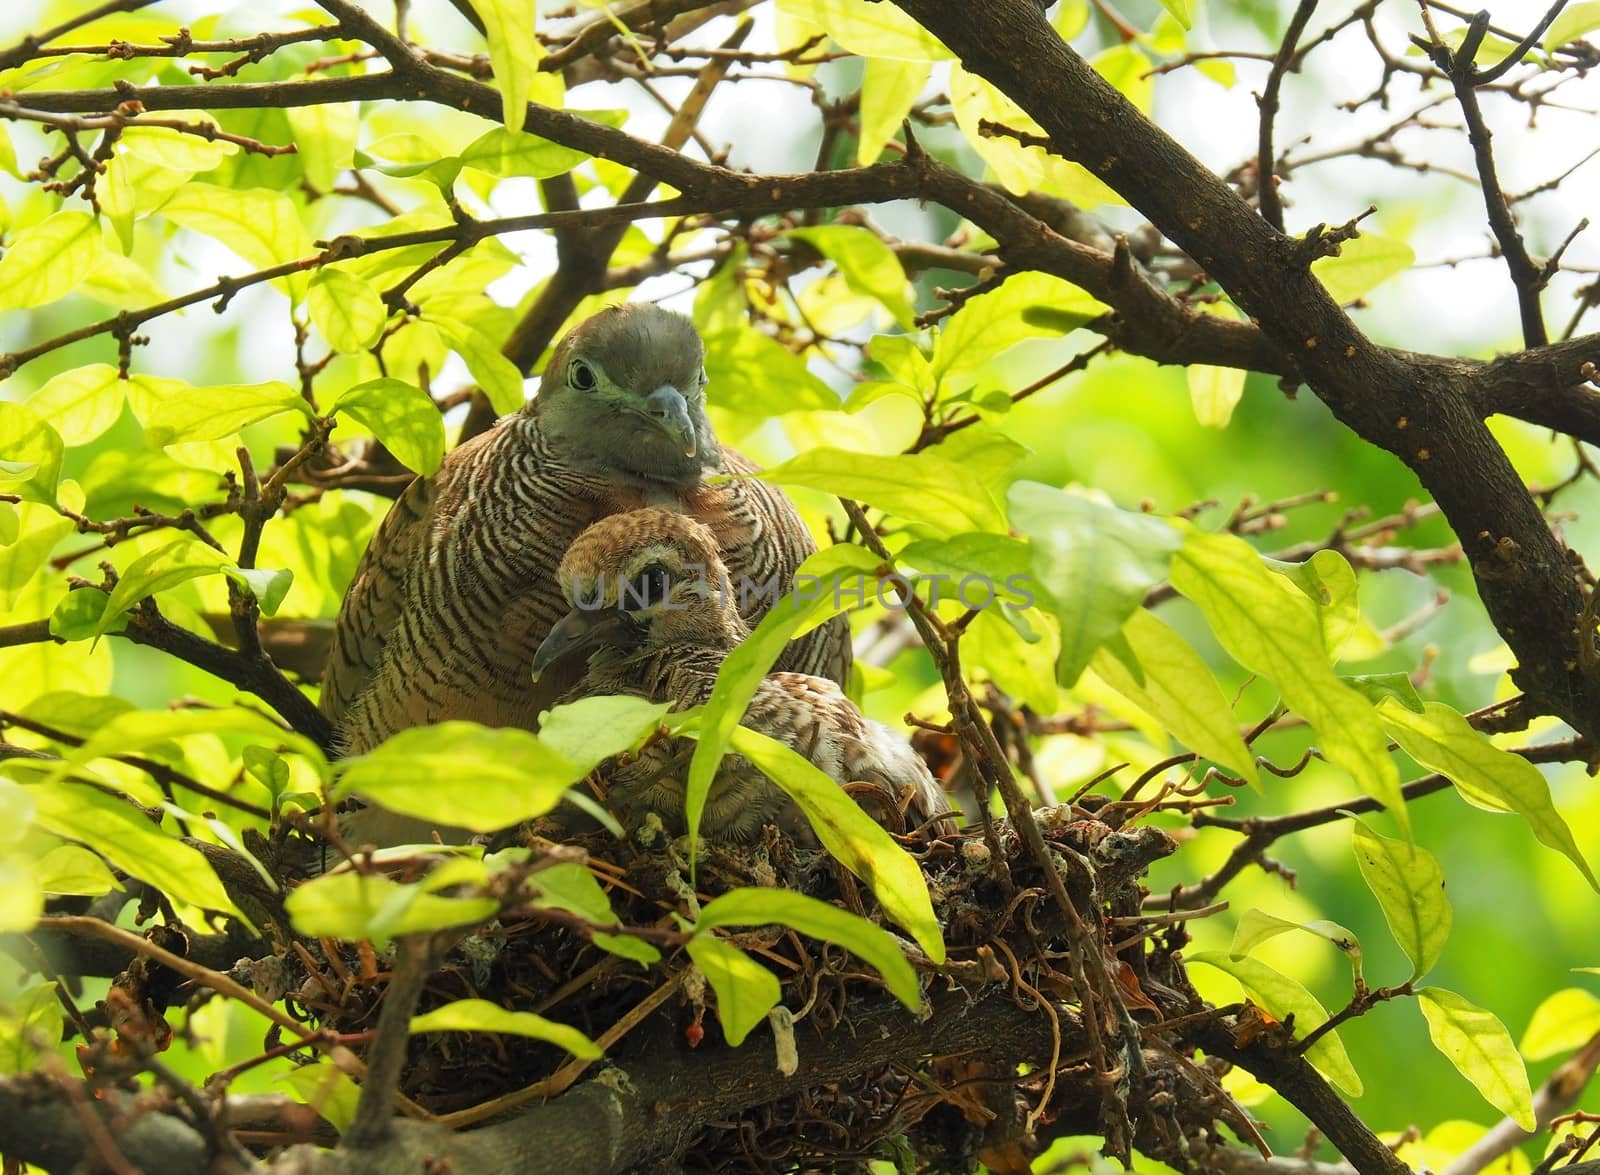 Two Birds In Bird's Nest, Baby Bird With Mother by WernBkk